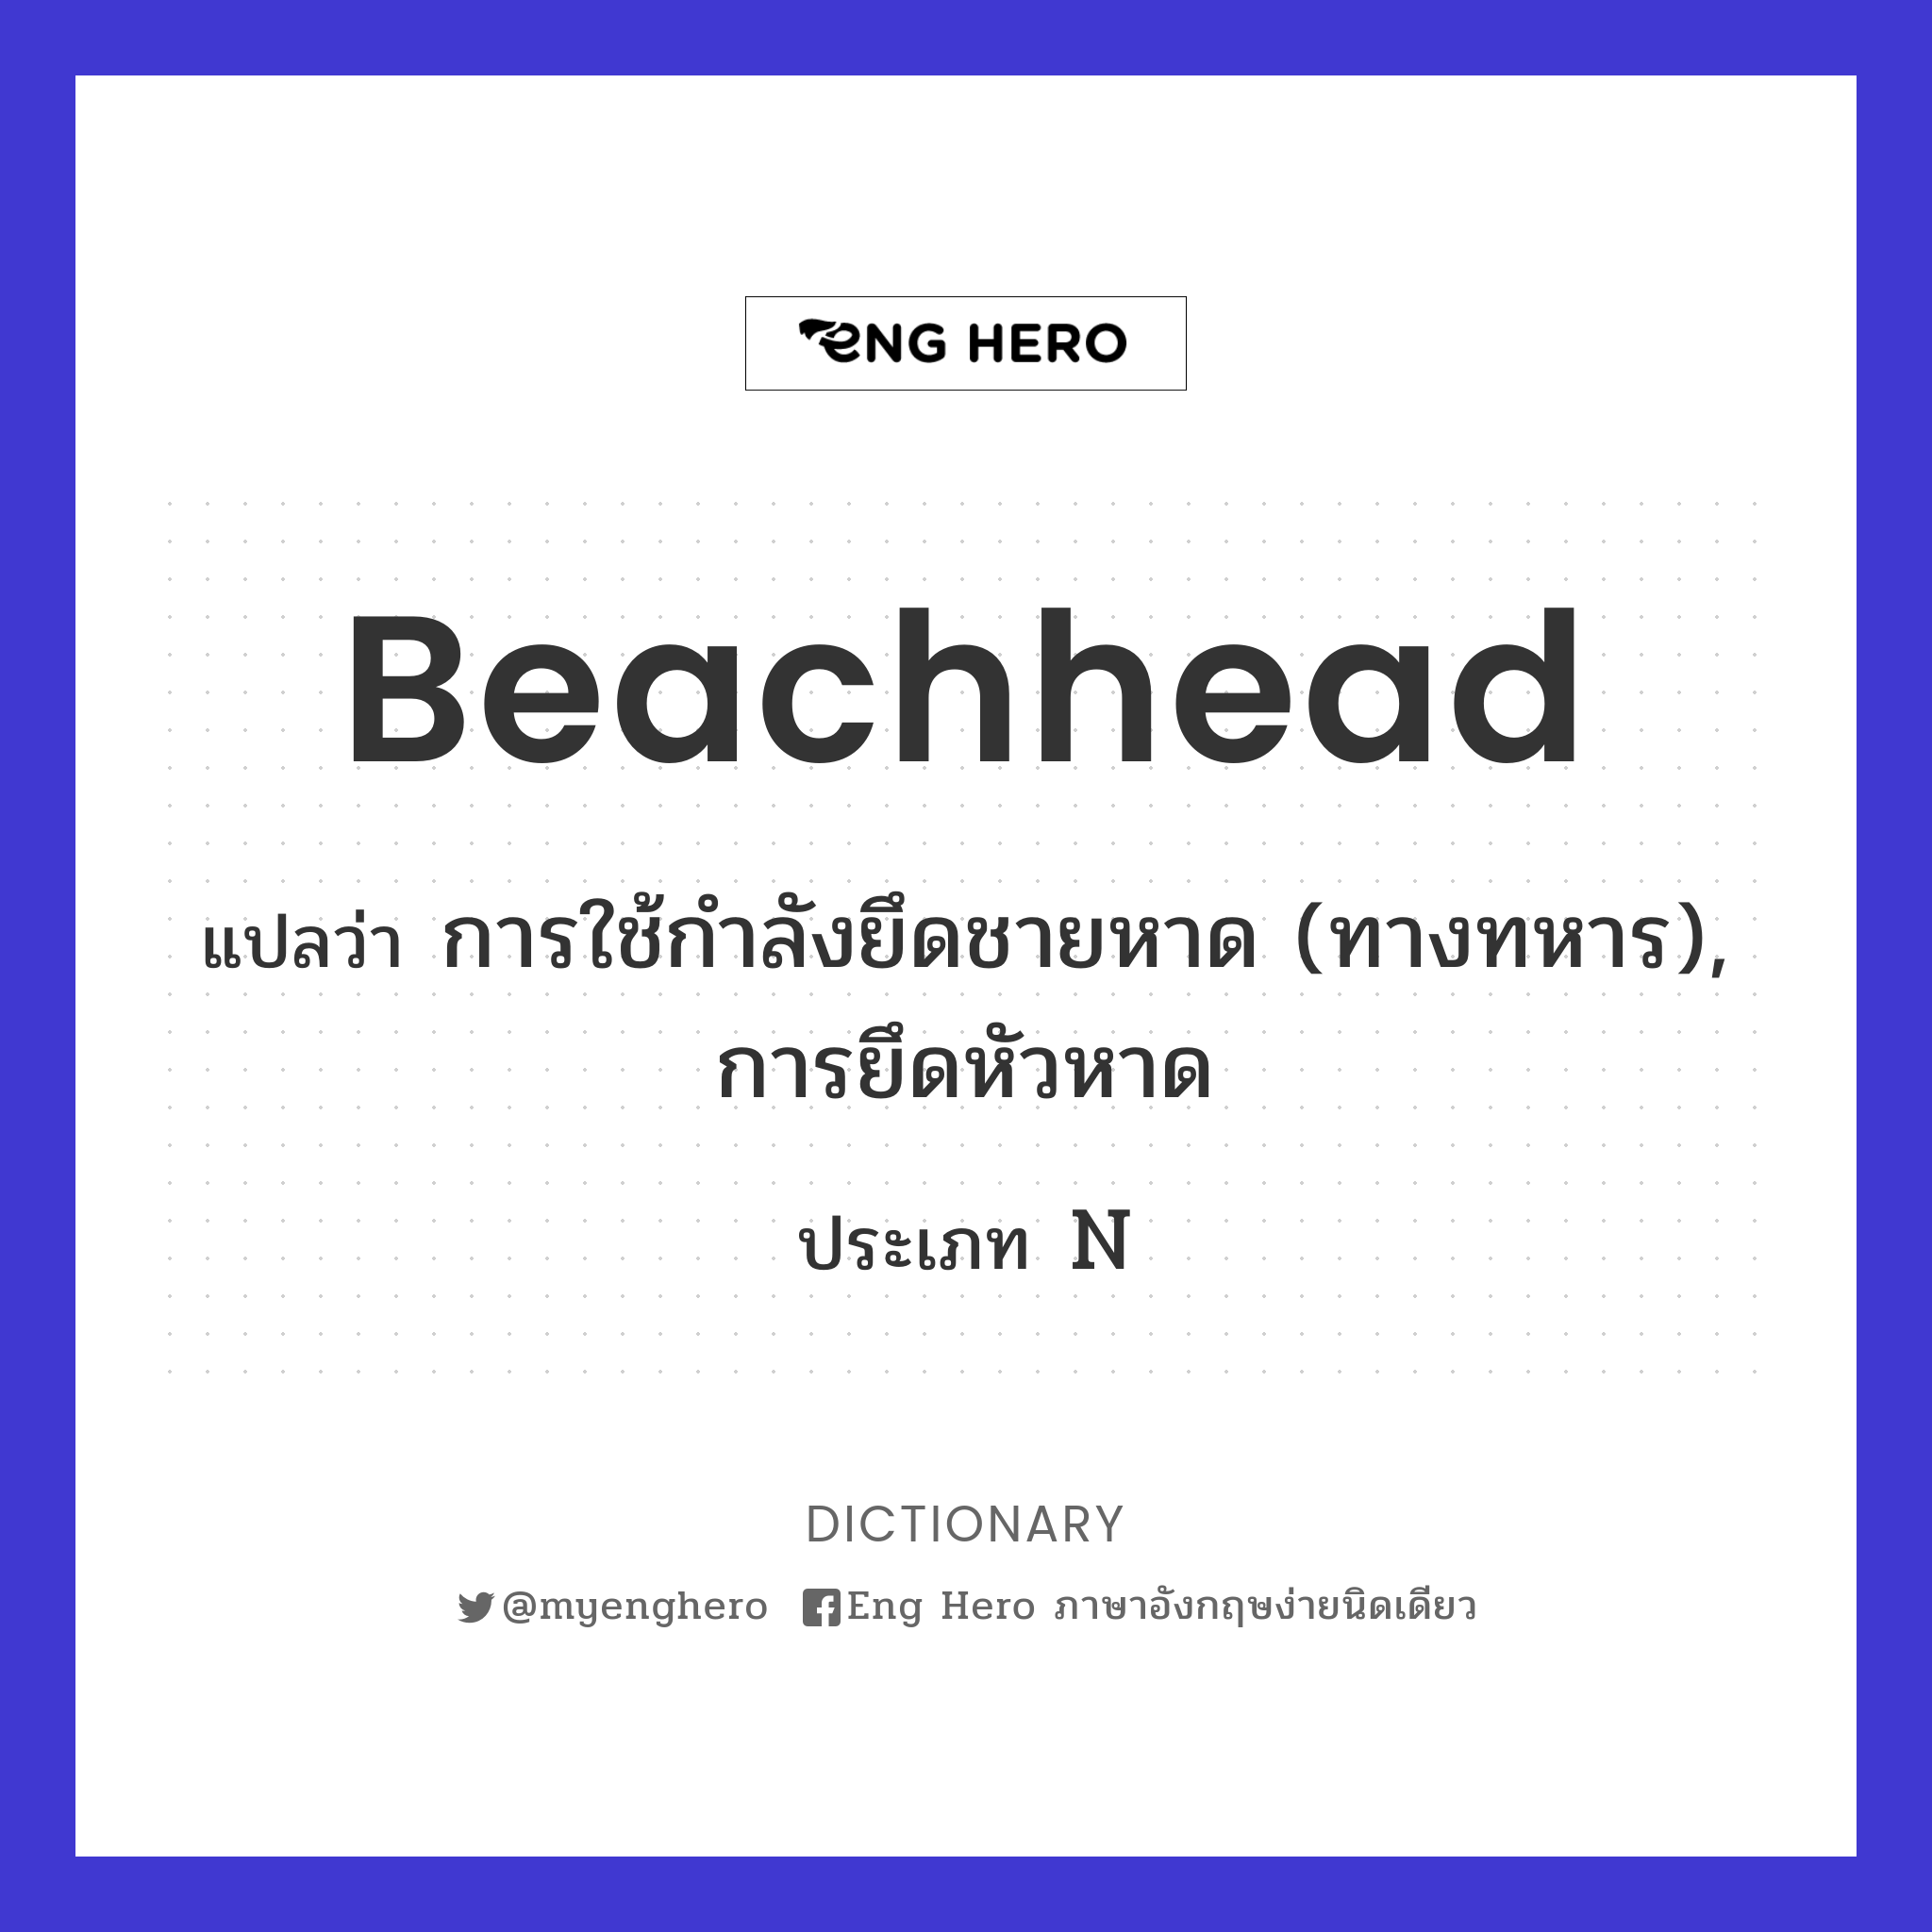 beachhead